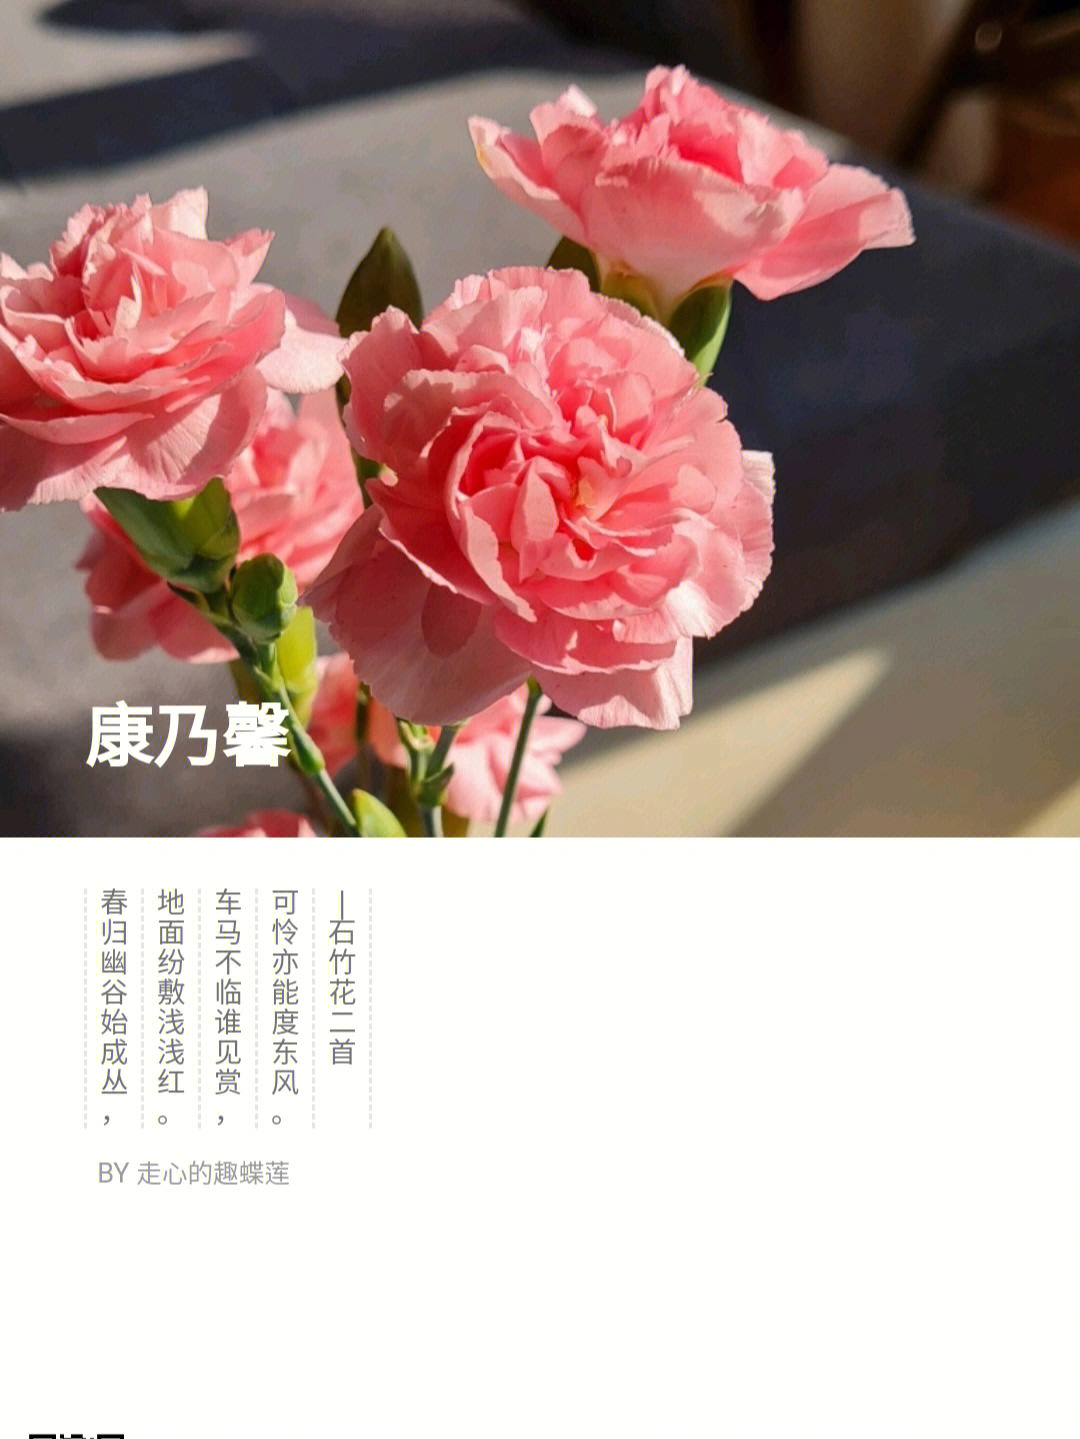 康乃馨花语 代表图片